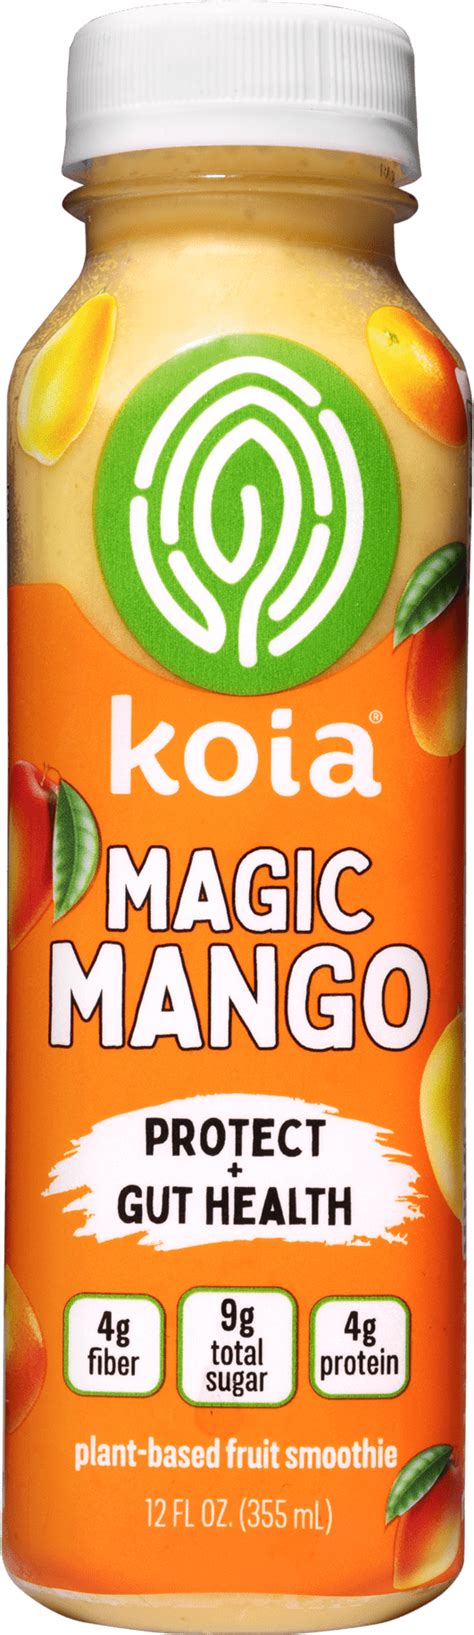 Koia magic mango